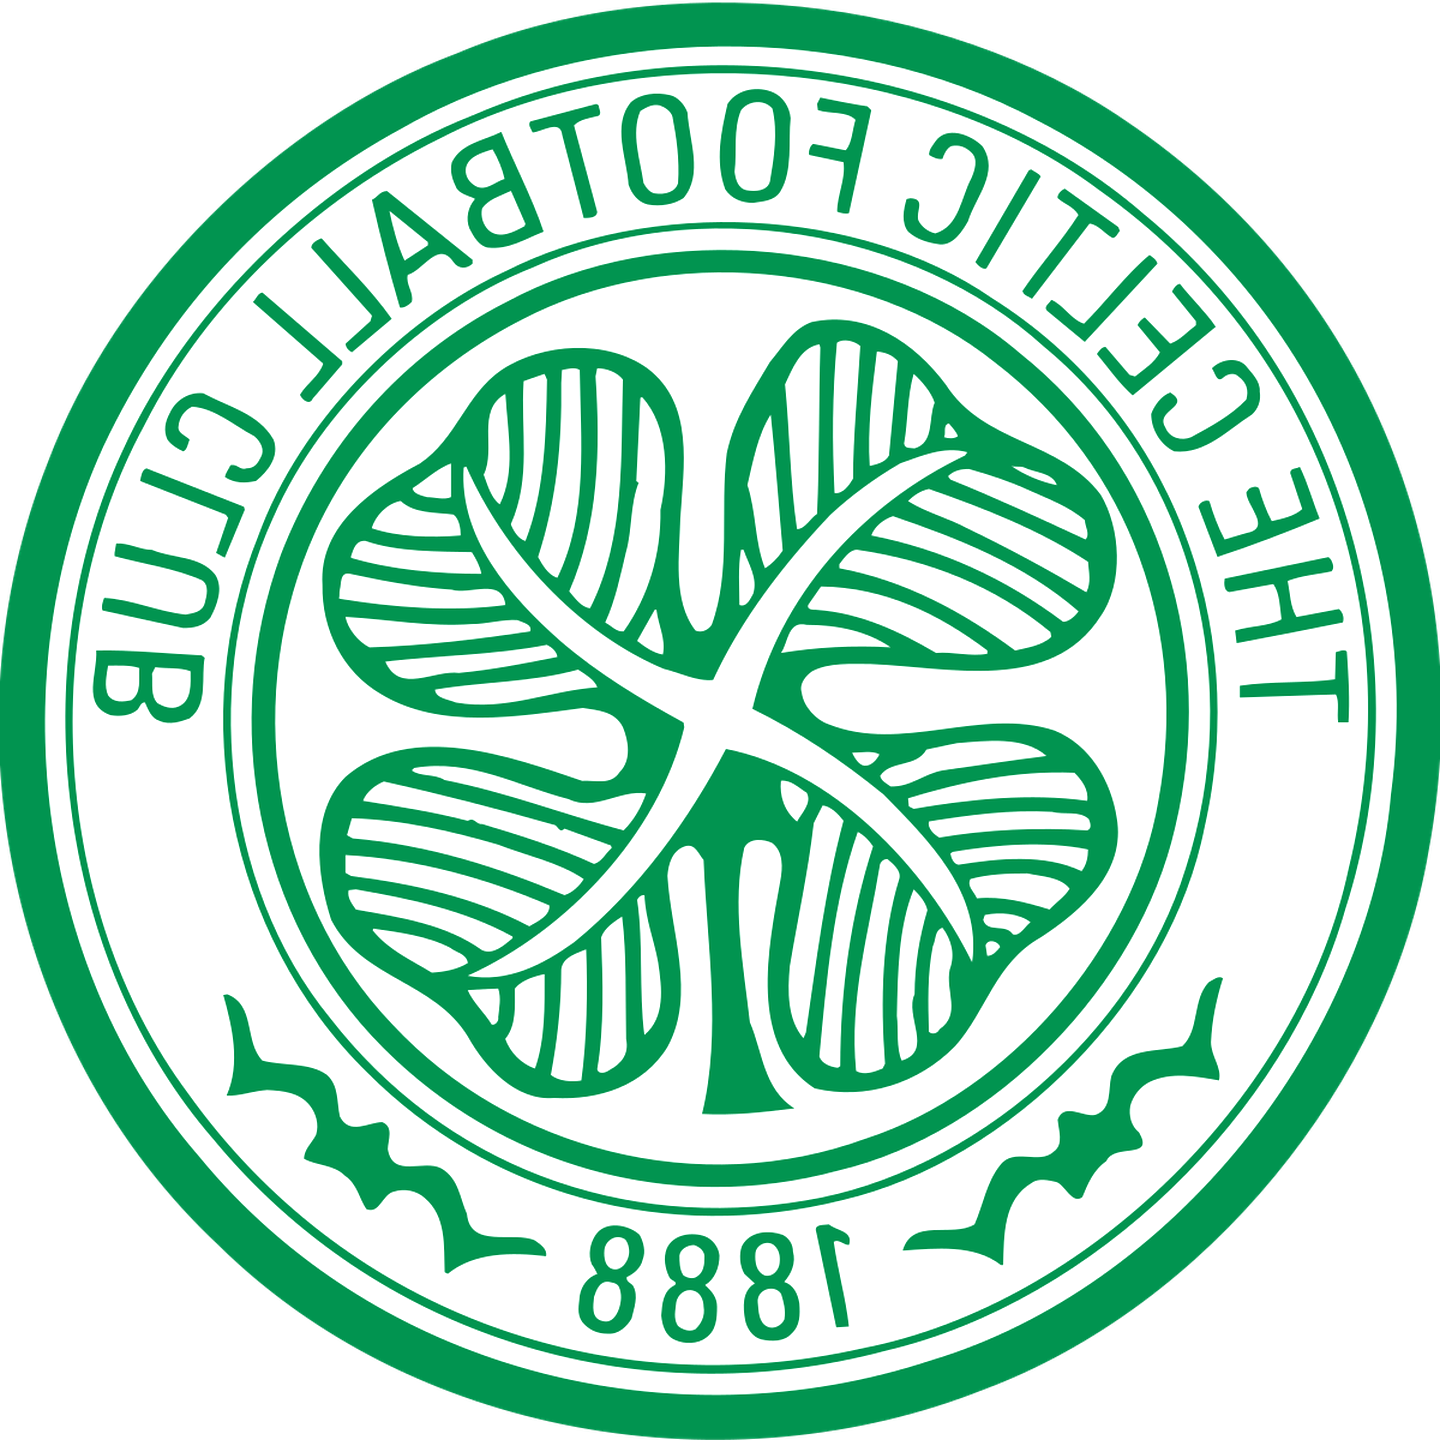 Celtic Fc Badges for sale in UK | 52 used Celtic Fc Badges